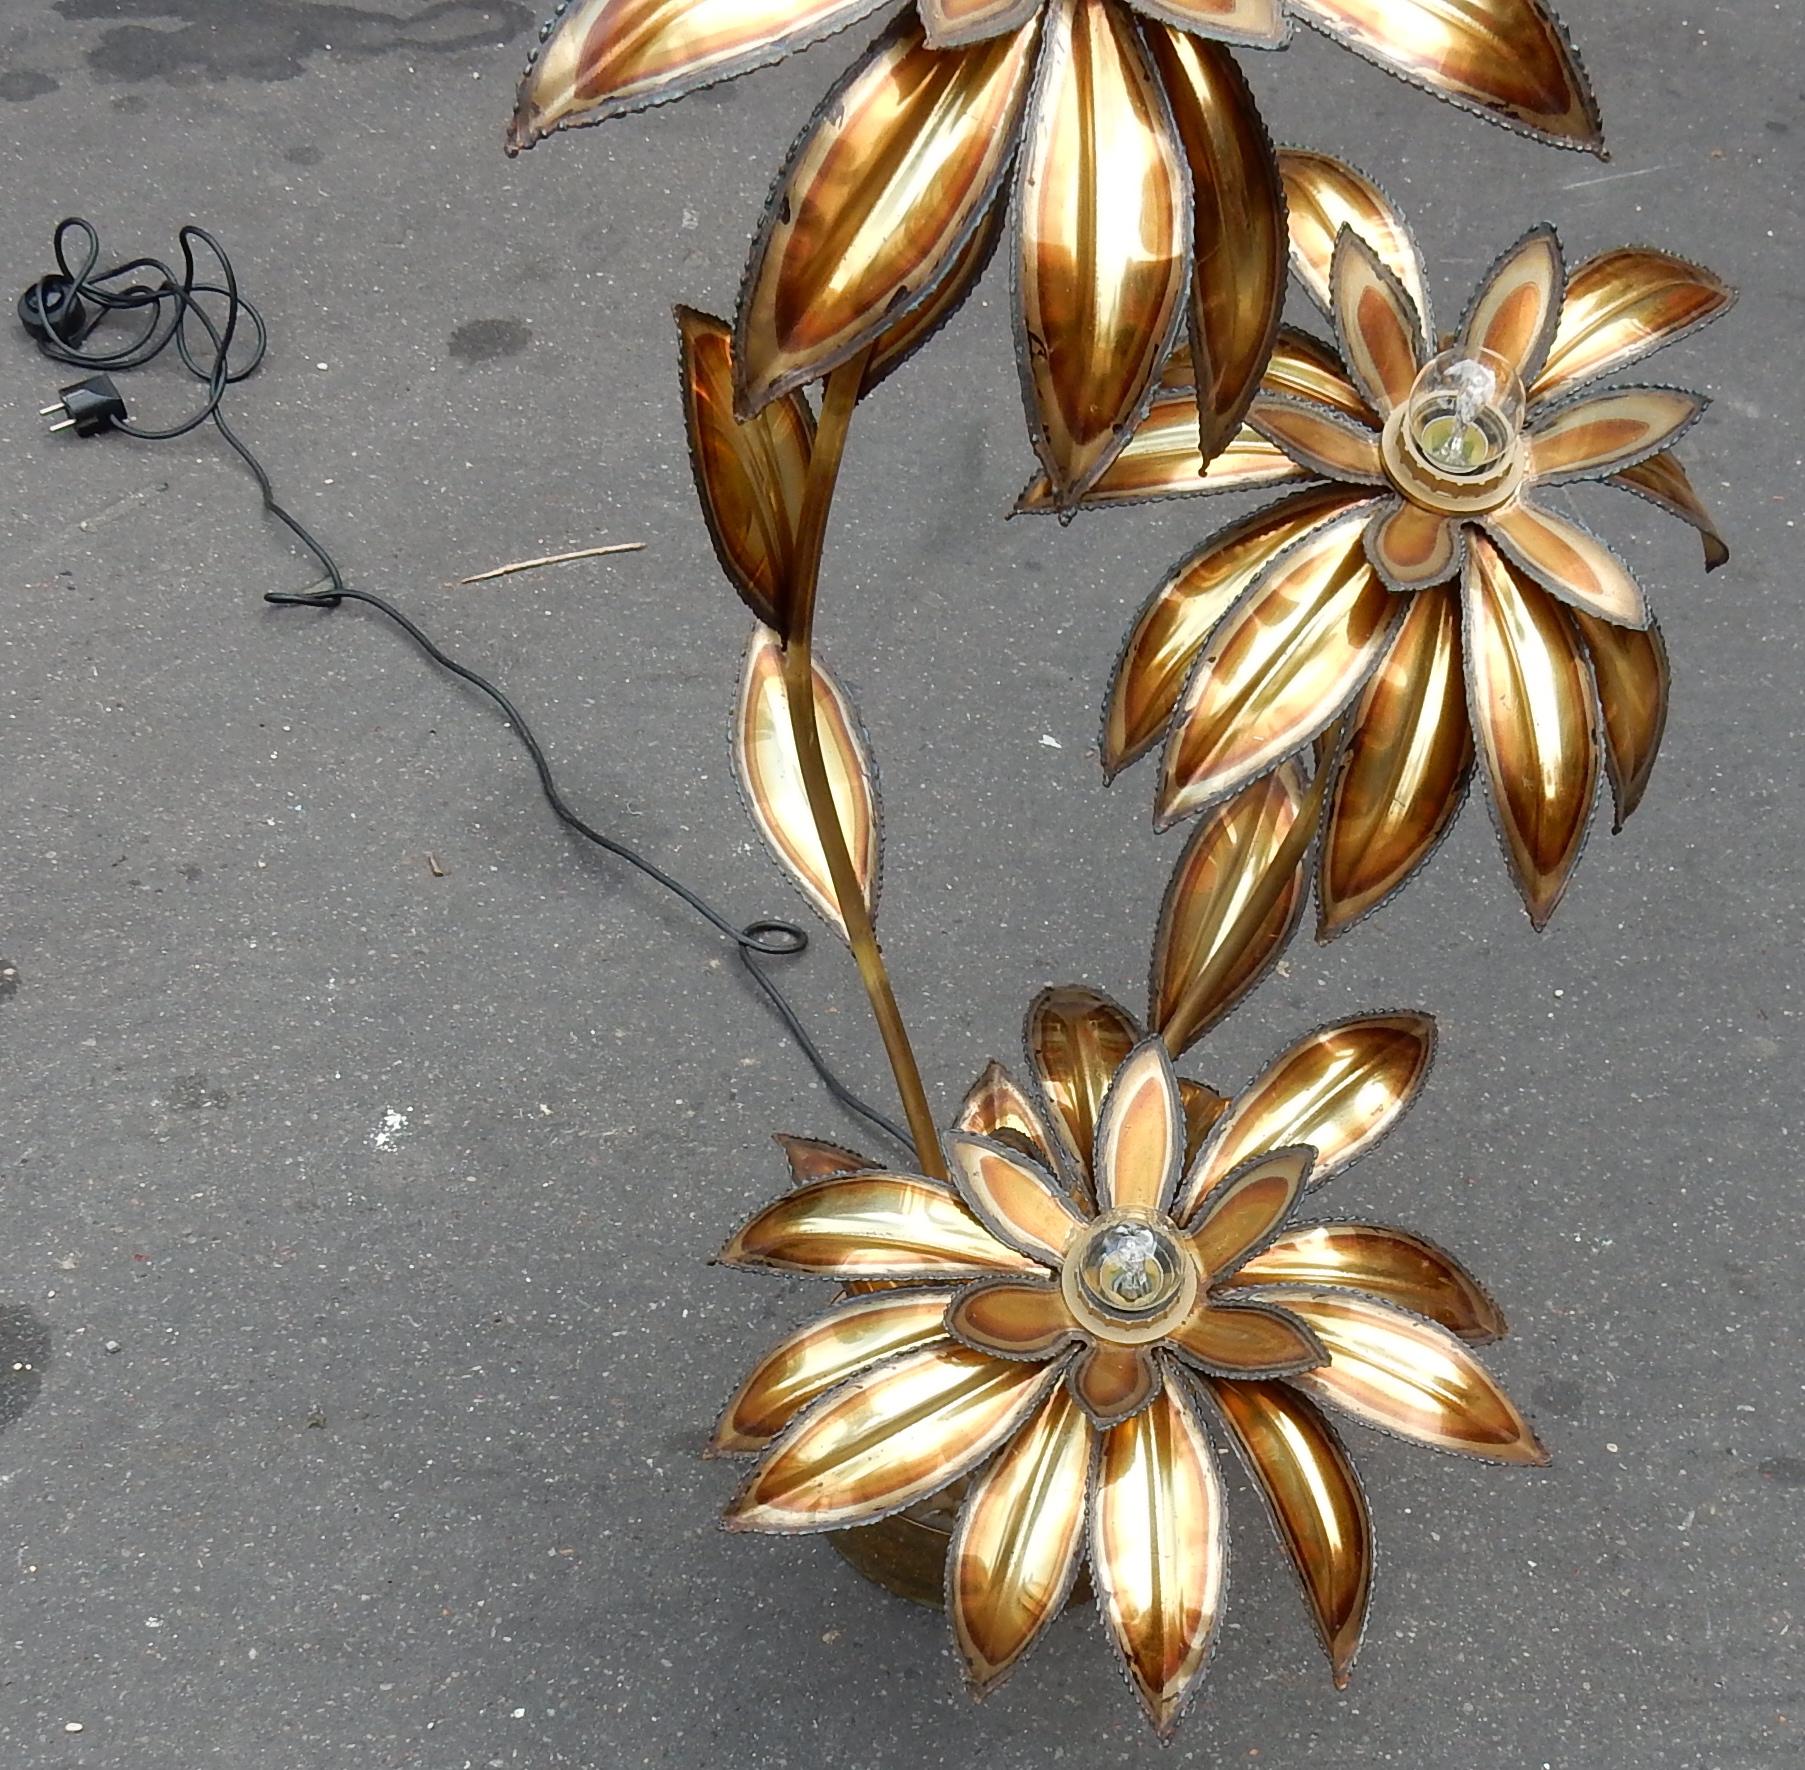 Plante éclairante en laiton patiné, fleurs en métal doré, Maison Jansen, base en laiton, circa 1970, bon état. Mesures : H 100 cm.